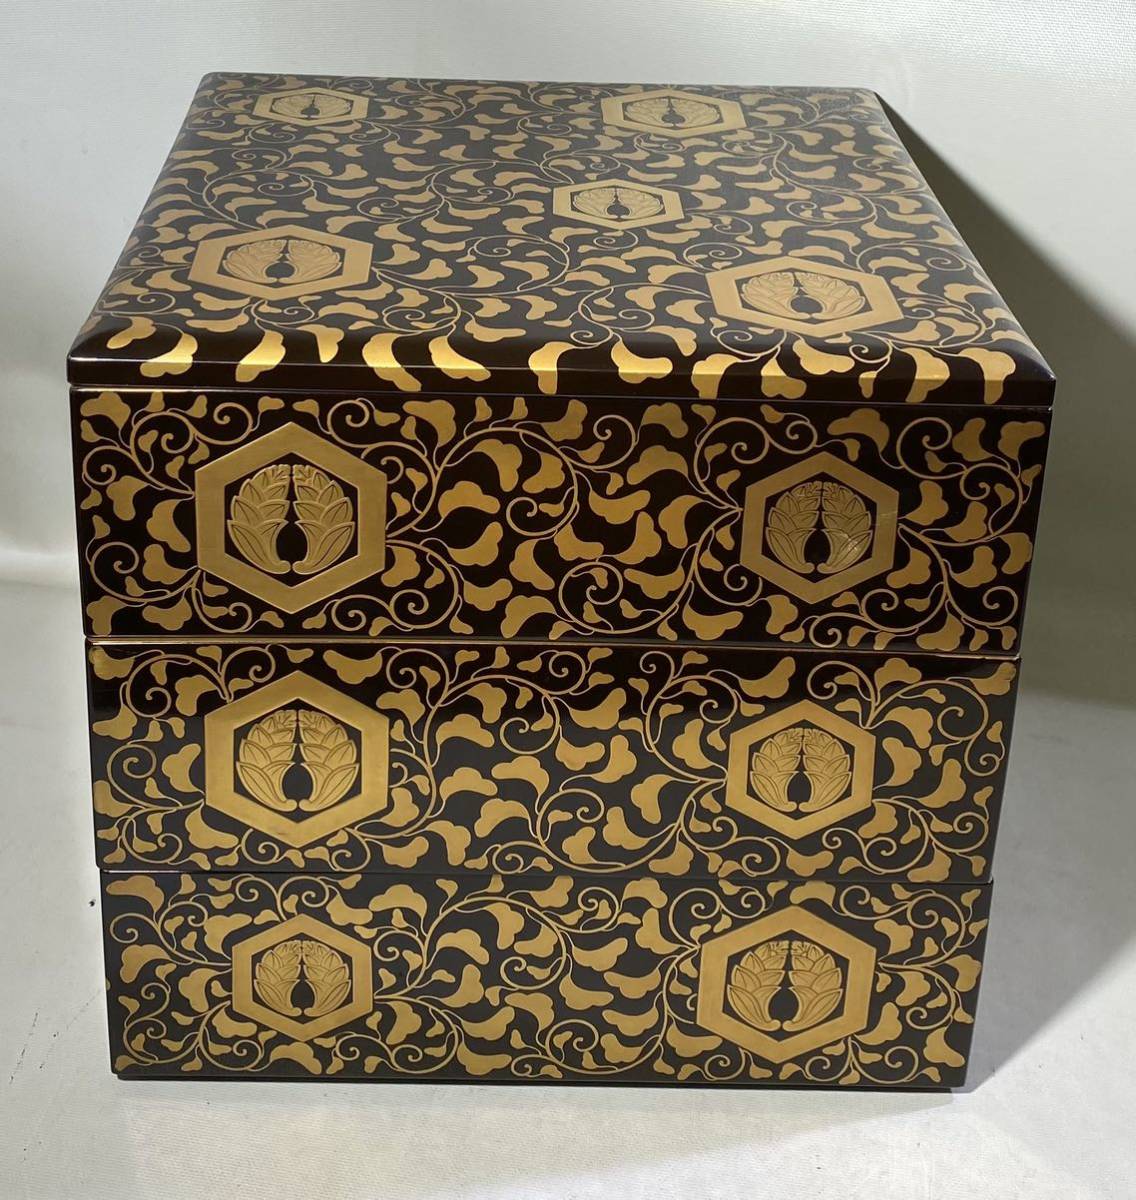  из дерева лакированные изделия лаковый покрытие лакировка золотая краска ввод включая ... груз . три уровень -слойный наружная коробка запад .